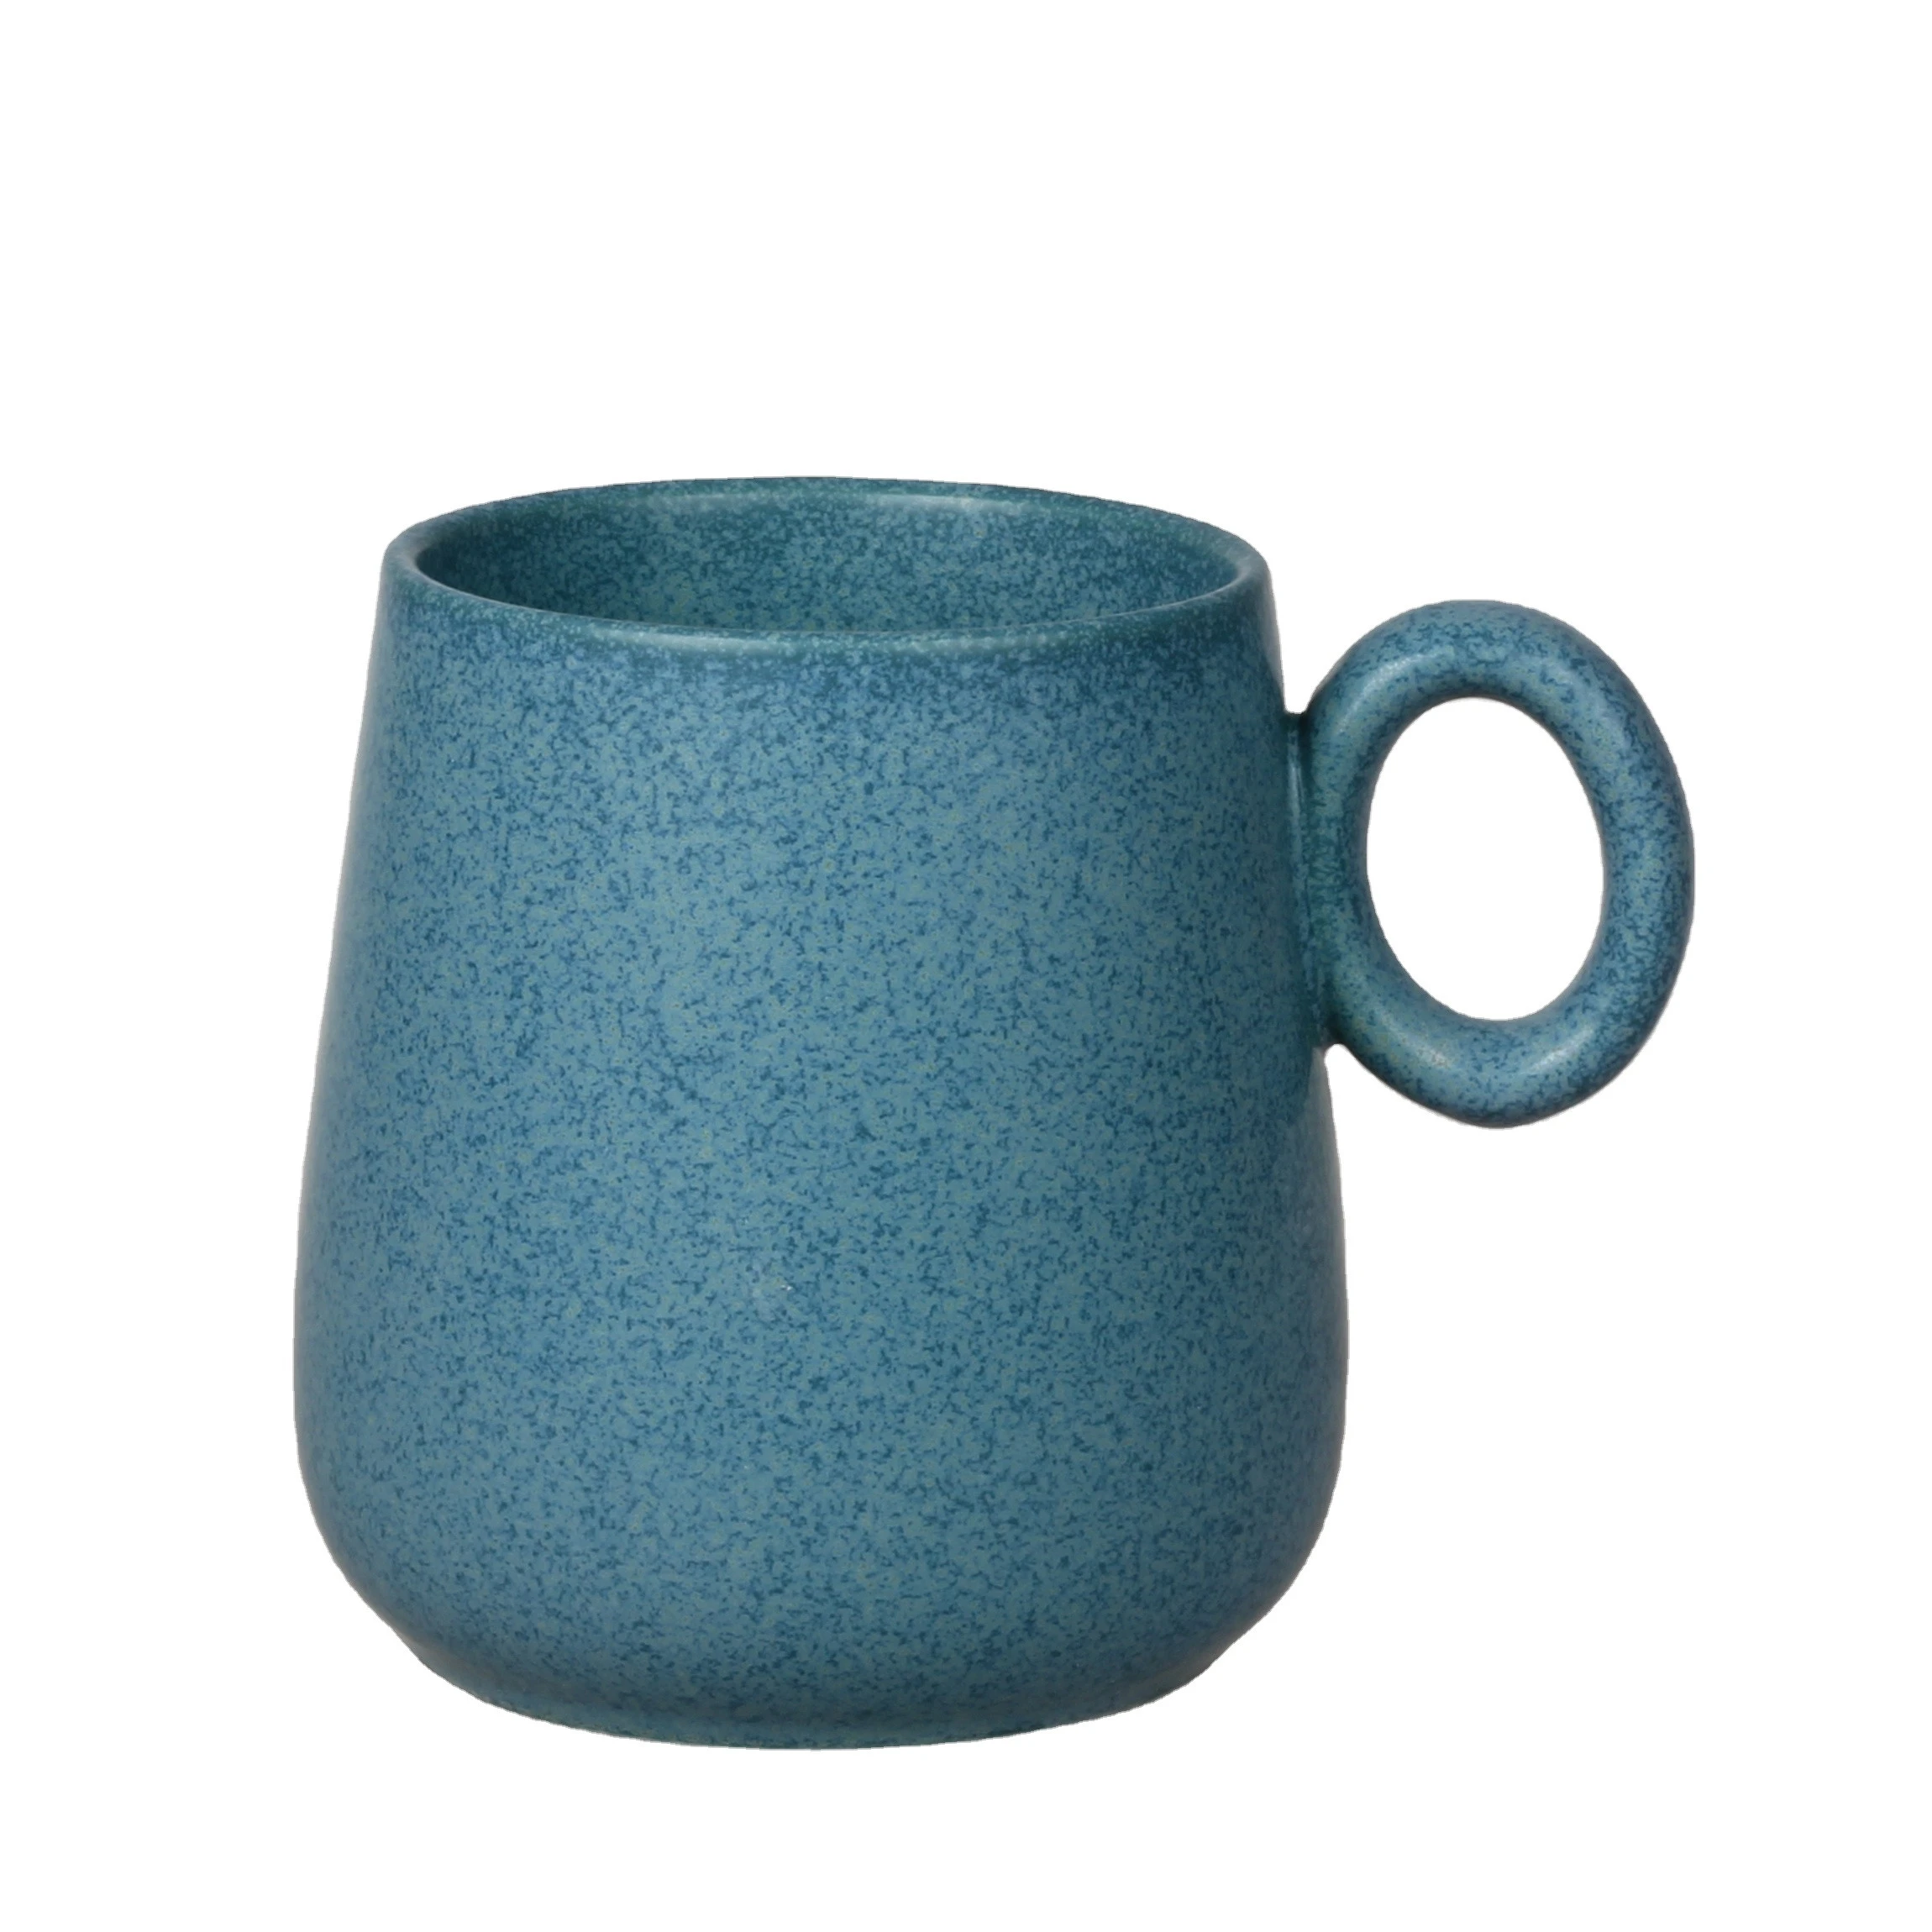 Turkish design vintage porcelain nordic cup reactive glaze ceramic mug wholesale